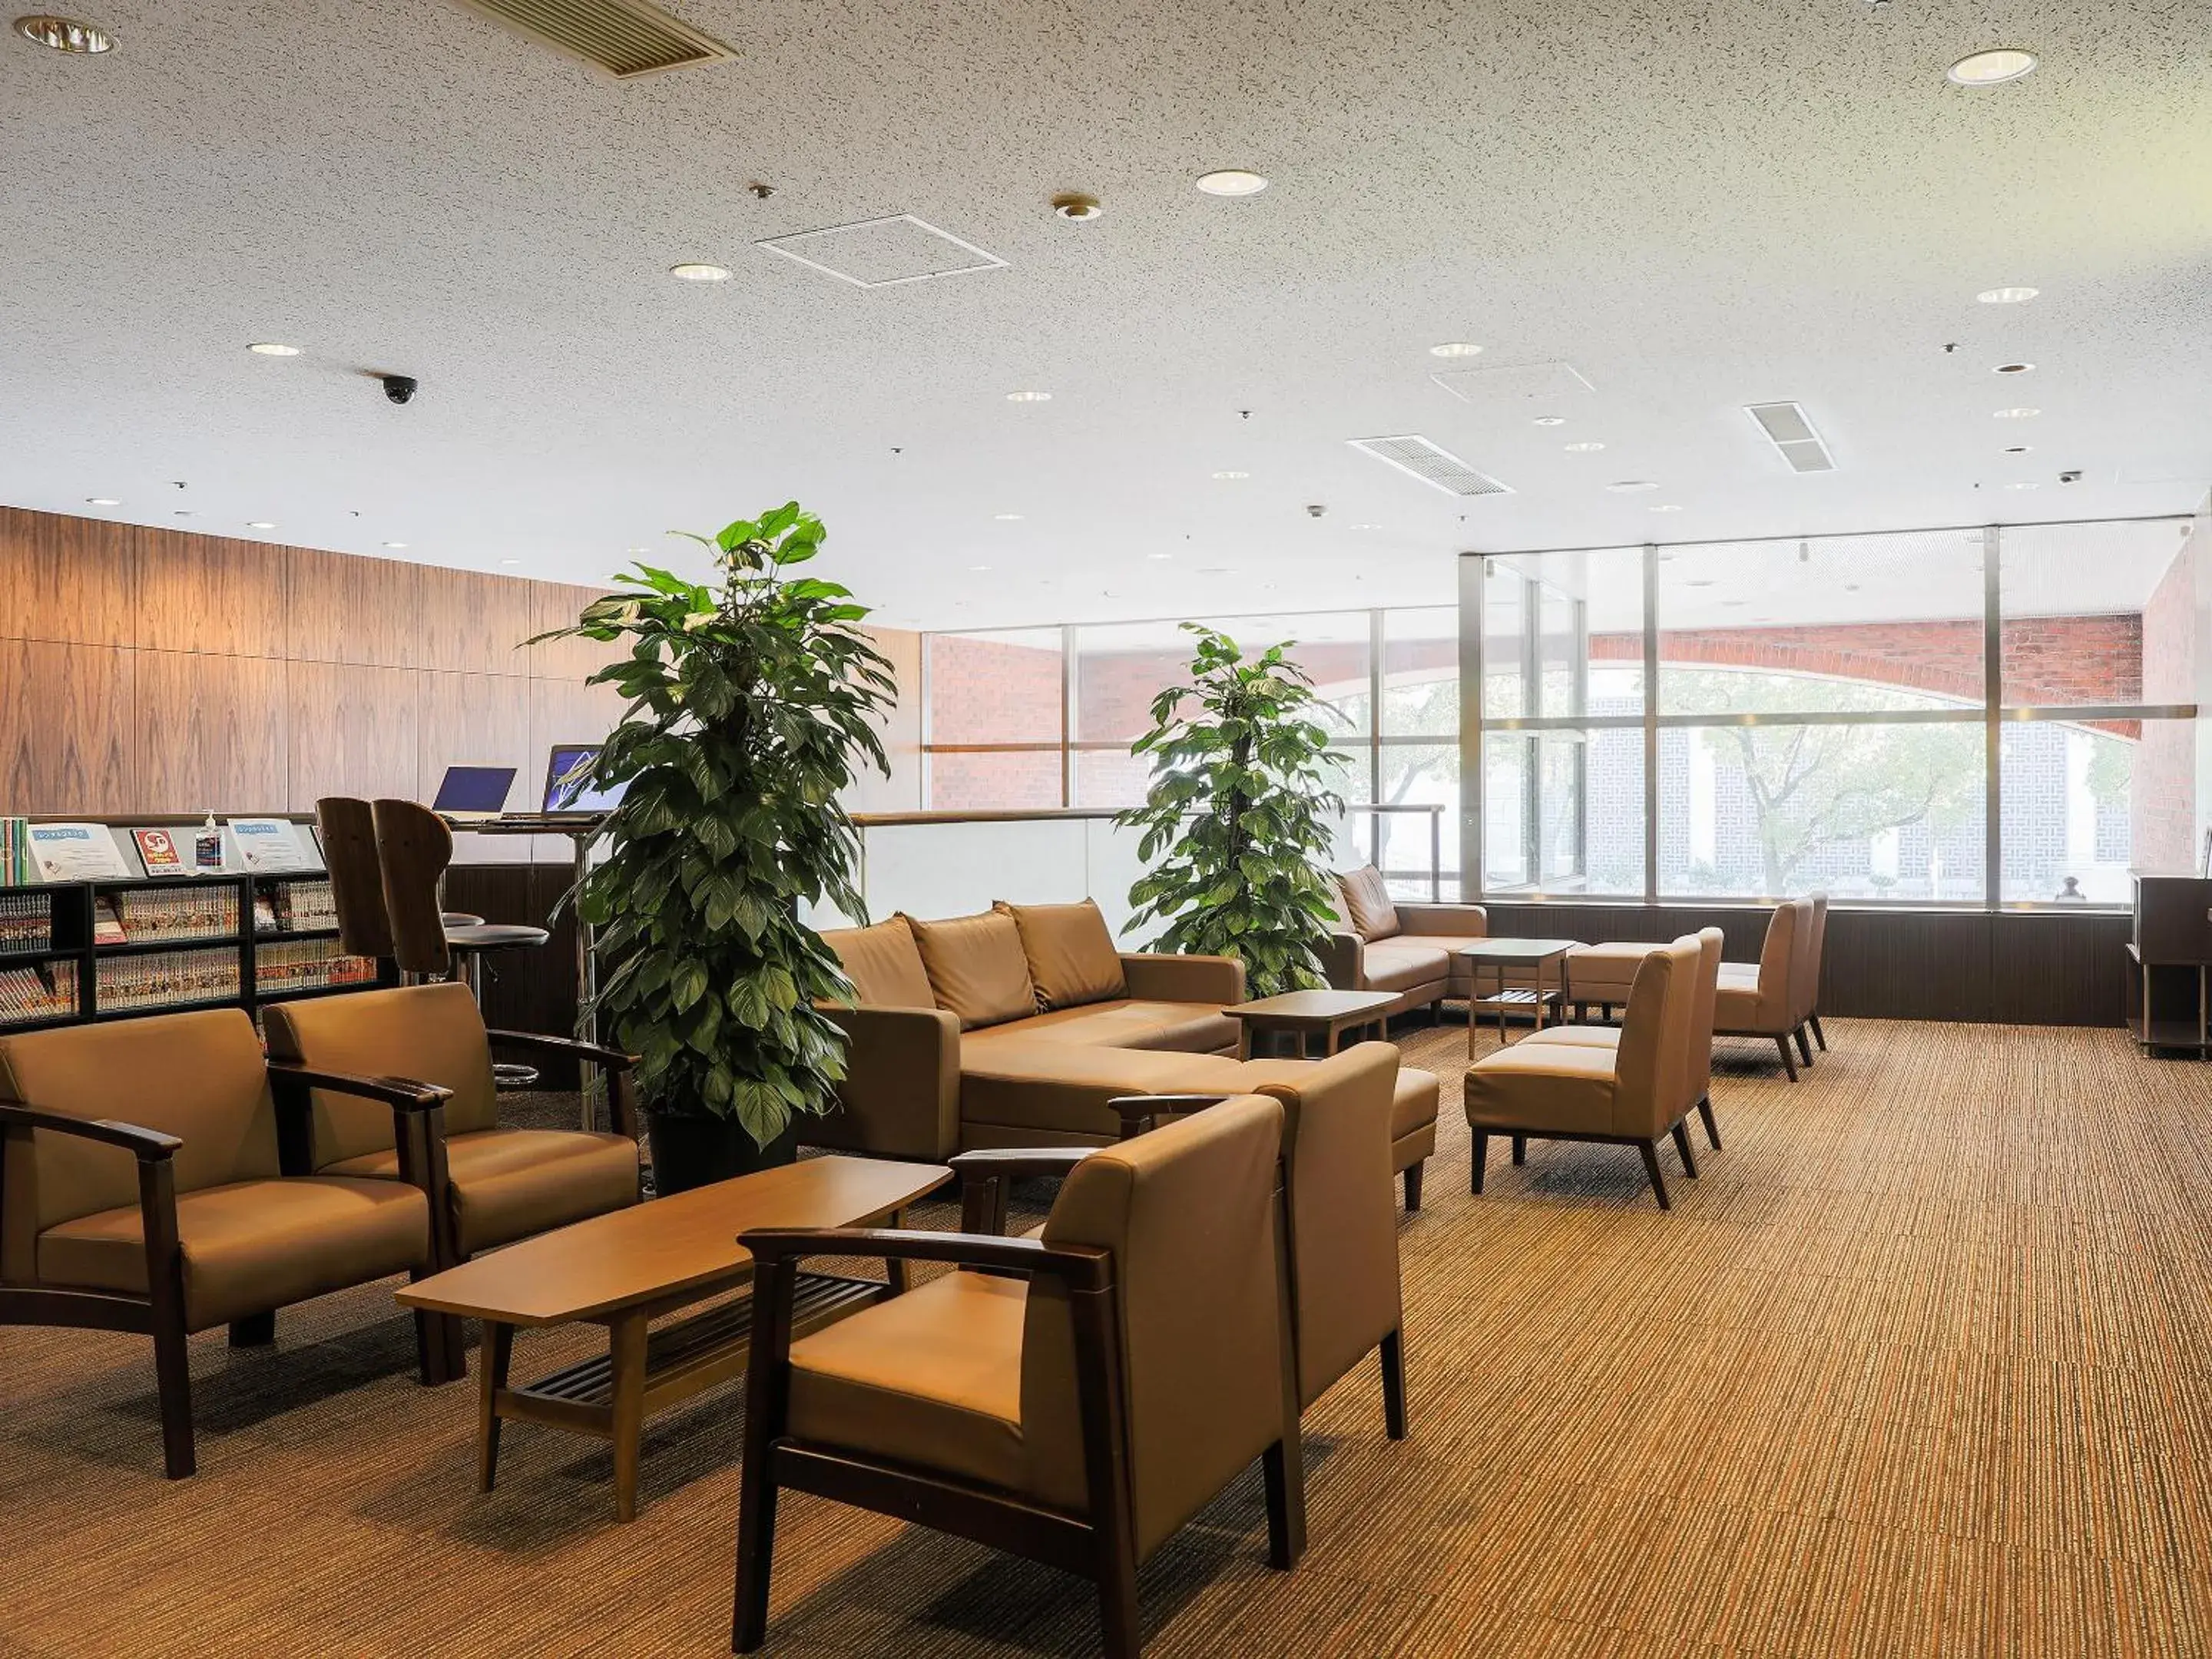 Lobby or reception in Hotel Wing International Nagoya